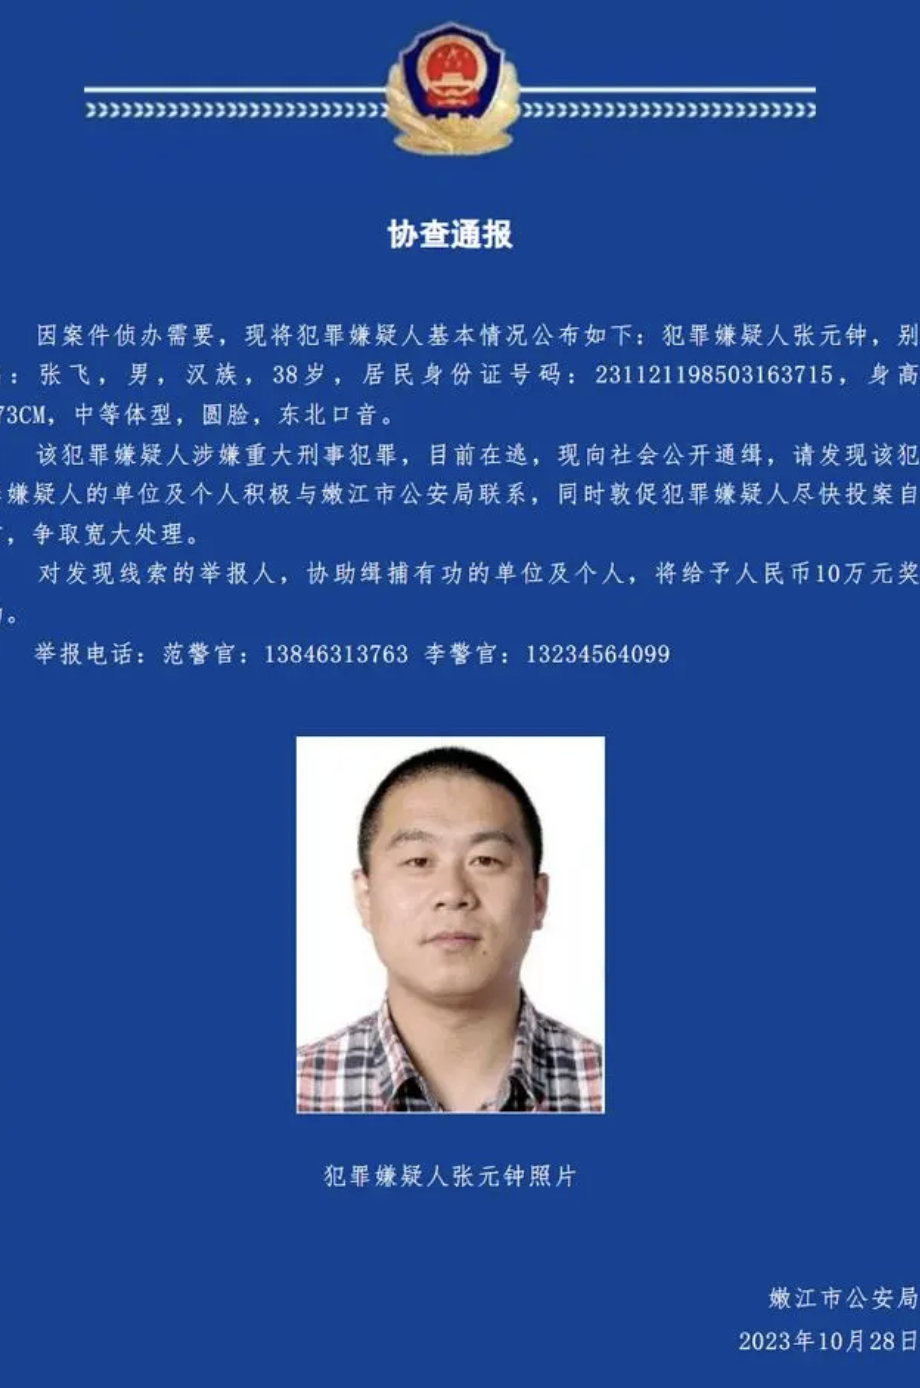 警方悬赏10万元通缉“张飞”：涉嫌重大刑事犯罪